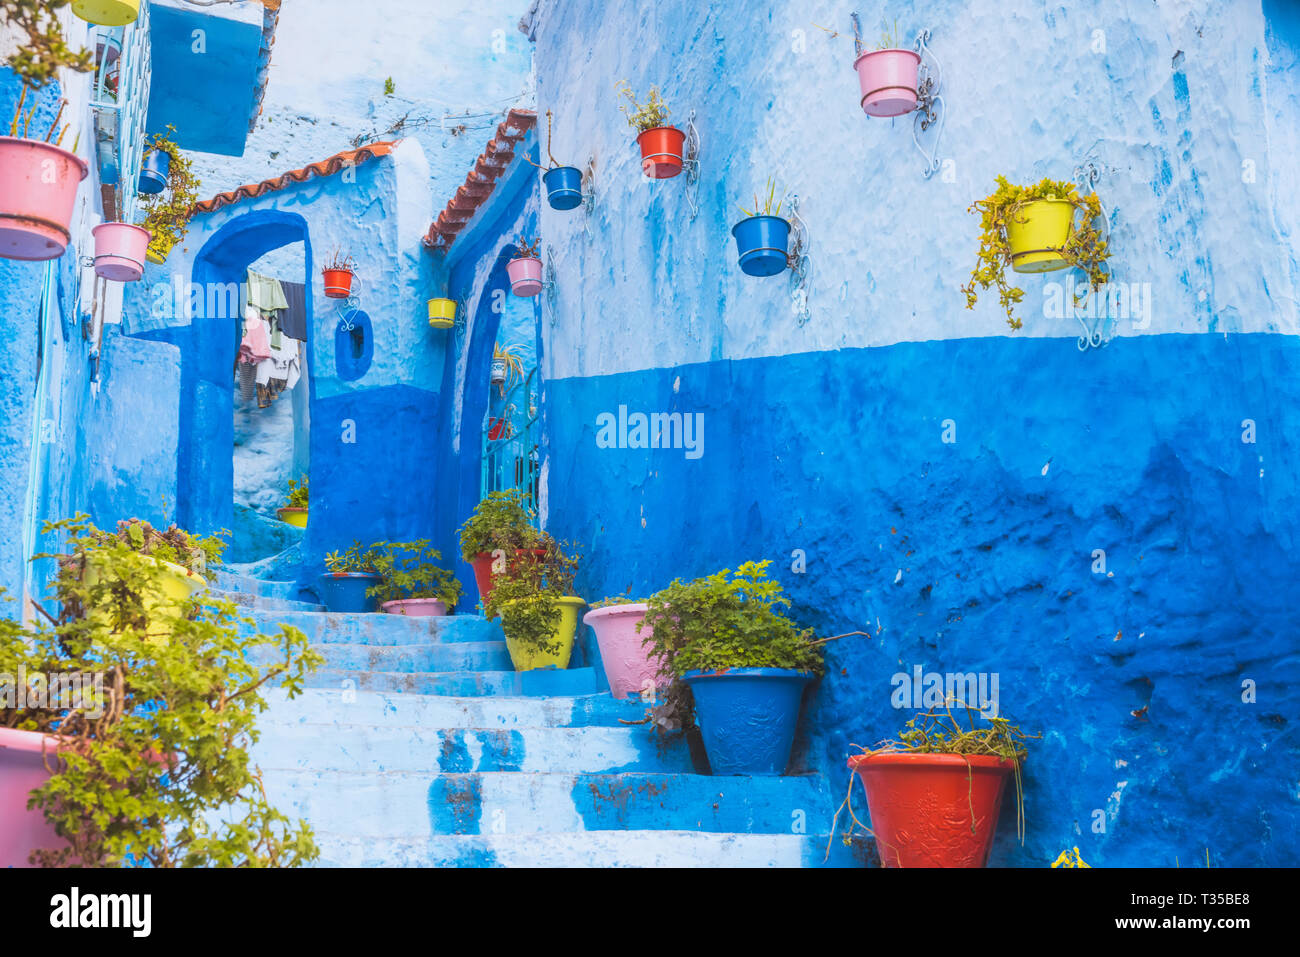 Tolle Aussicht von der Straße in die blaue Stadt Chefchaouen. Lage: in Tanger, Marokko, Afrika. Künstlerische Bild. Beauty World Stockfoto